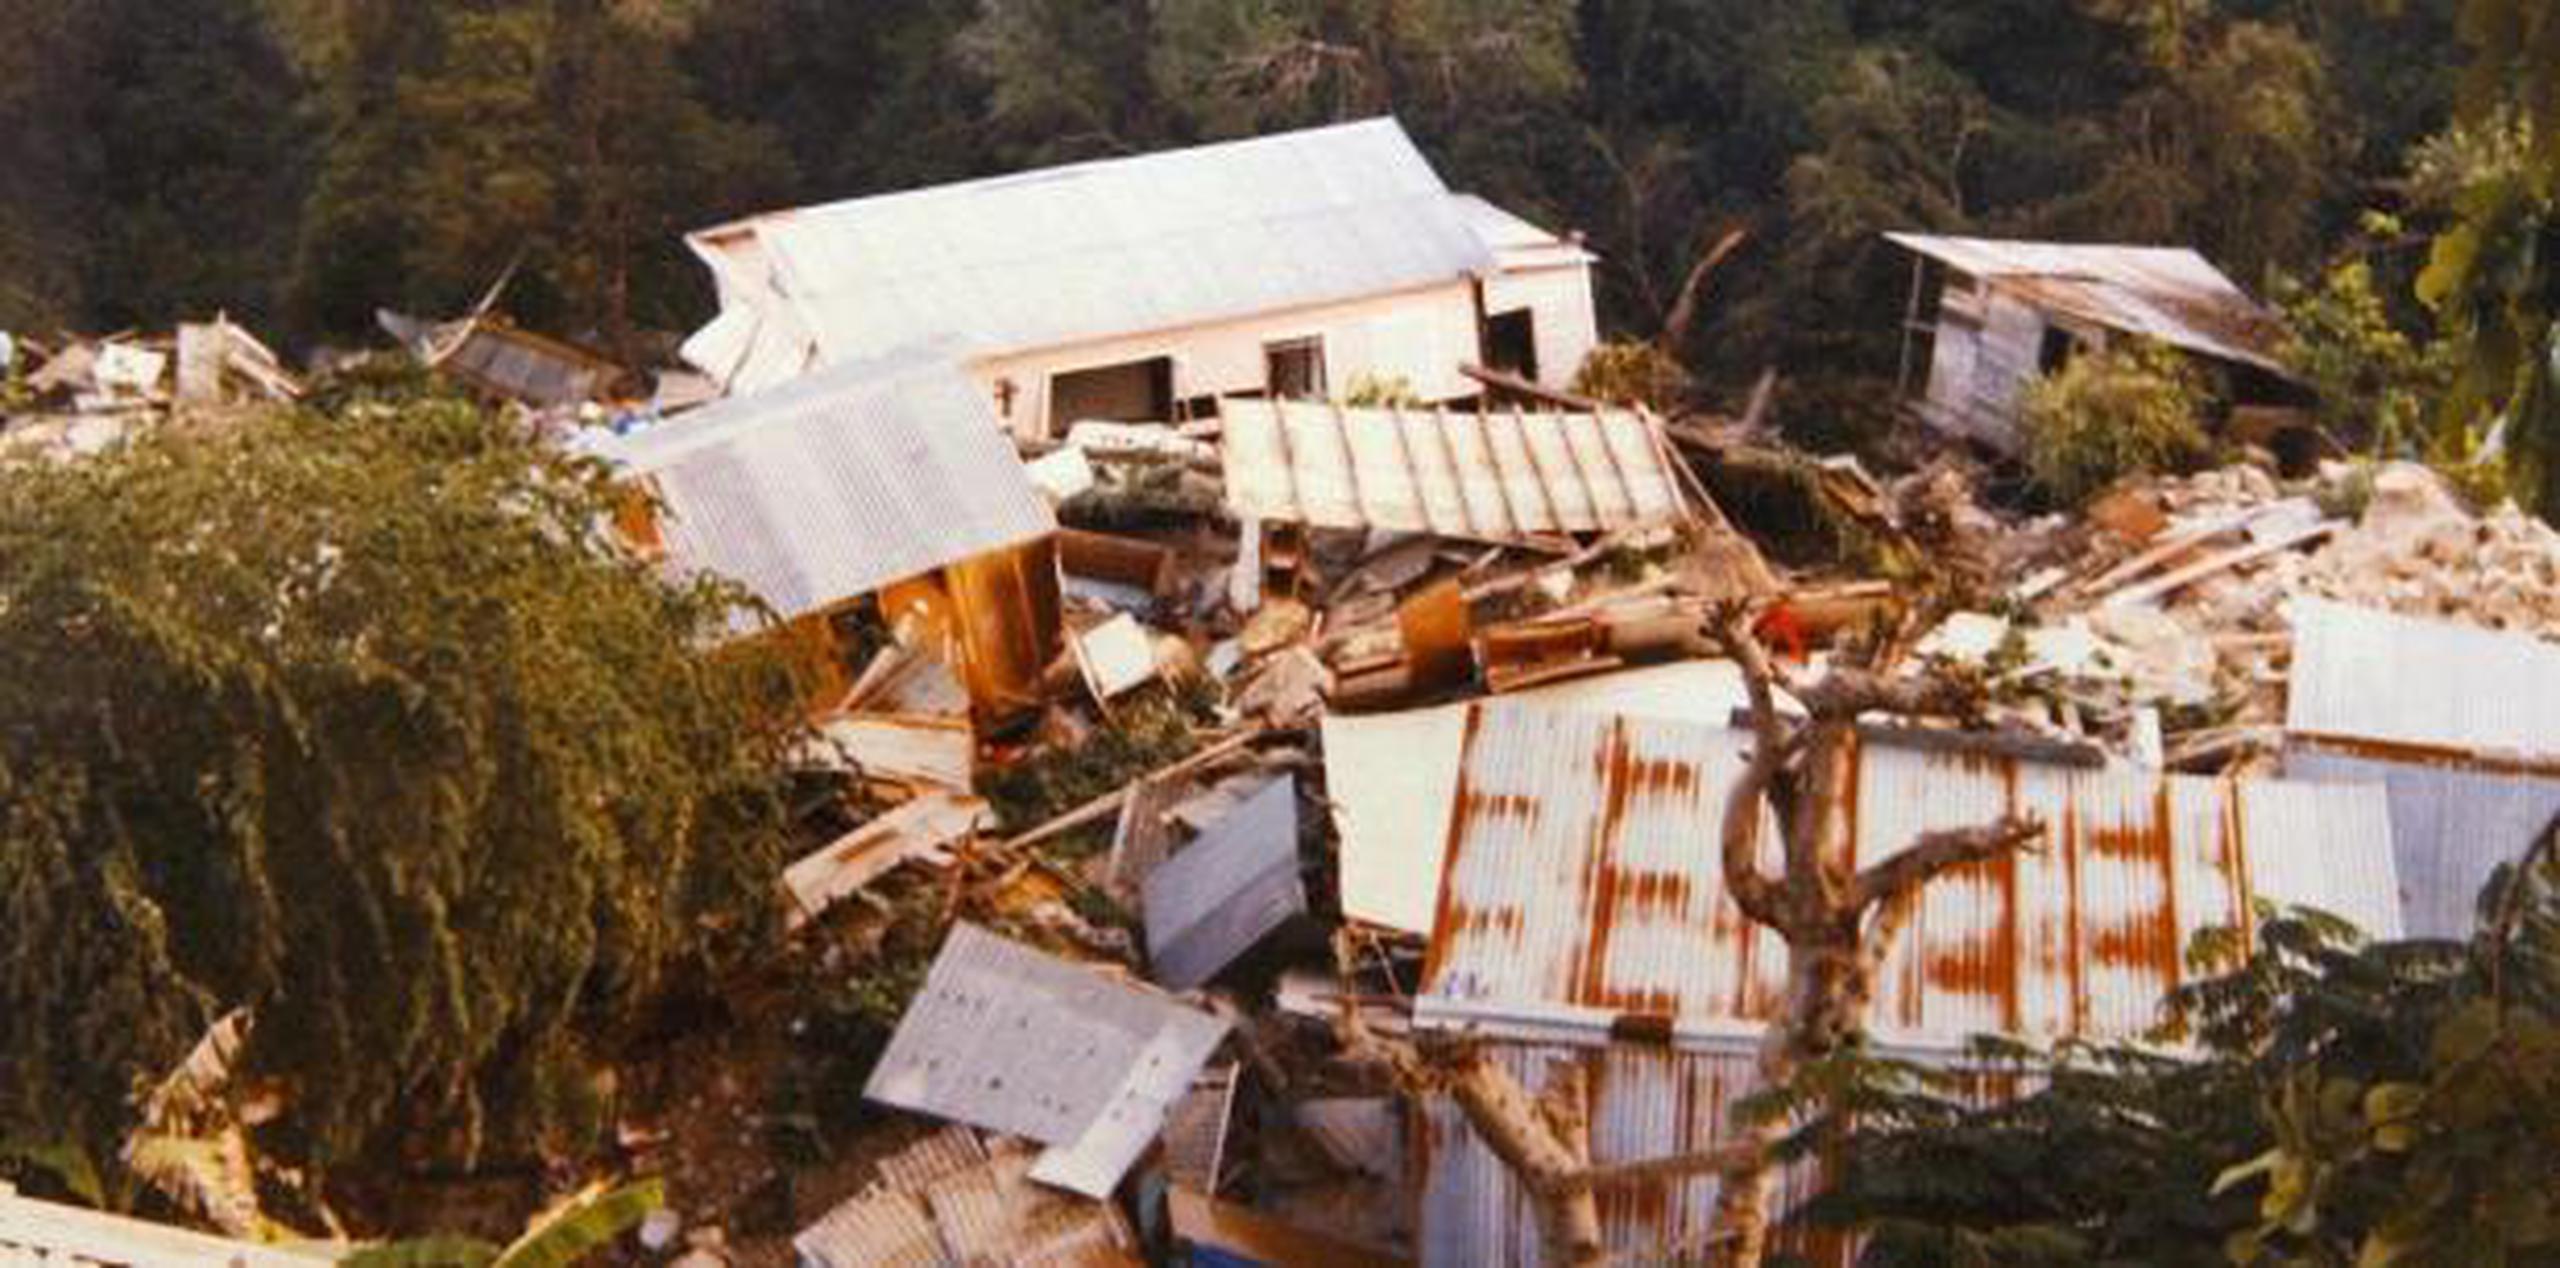 El senador Nelson Cruz presentó el Proyecto del Senado 1104, que declara el 7 de octubre de cada año, como el Día de la recordación por las víctimas del derrumbe en Mameyes, Ponce. (Archivo)